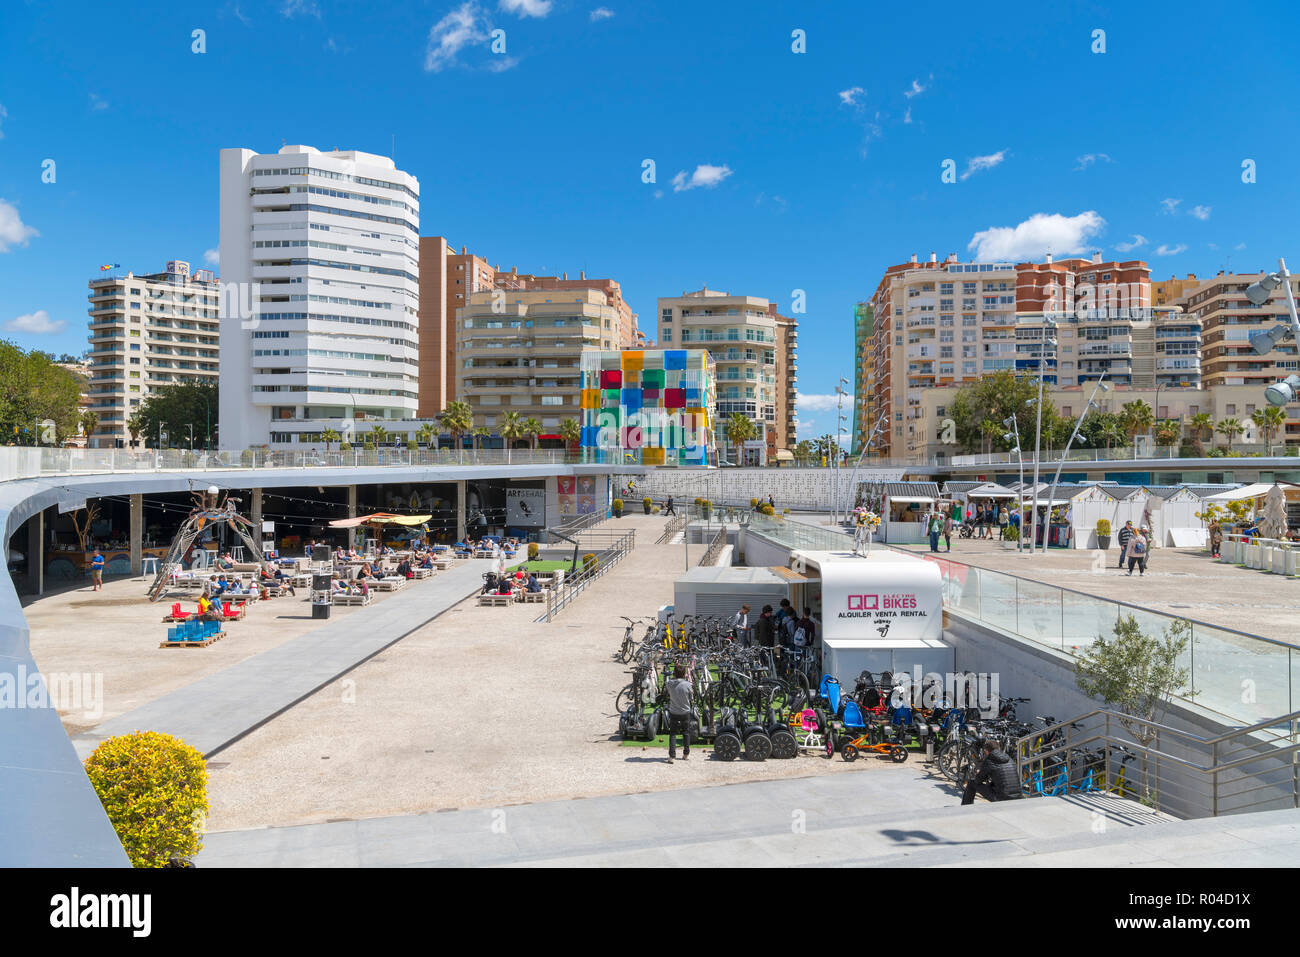 Muelle Uno shopping centre à la direction du Centre Pompidou Centre Pompidou Malaga (Malaga), Malaga, Costa del Sol, Andalousie, Espagne Banque D'Images